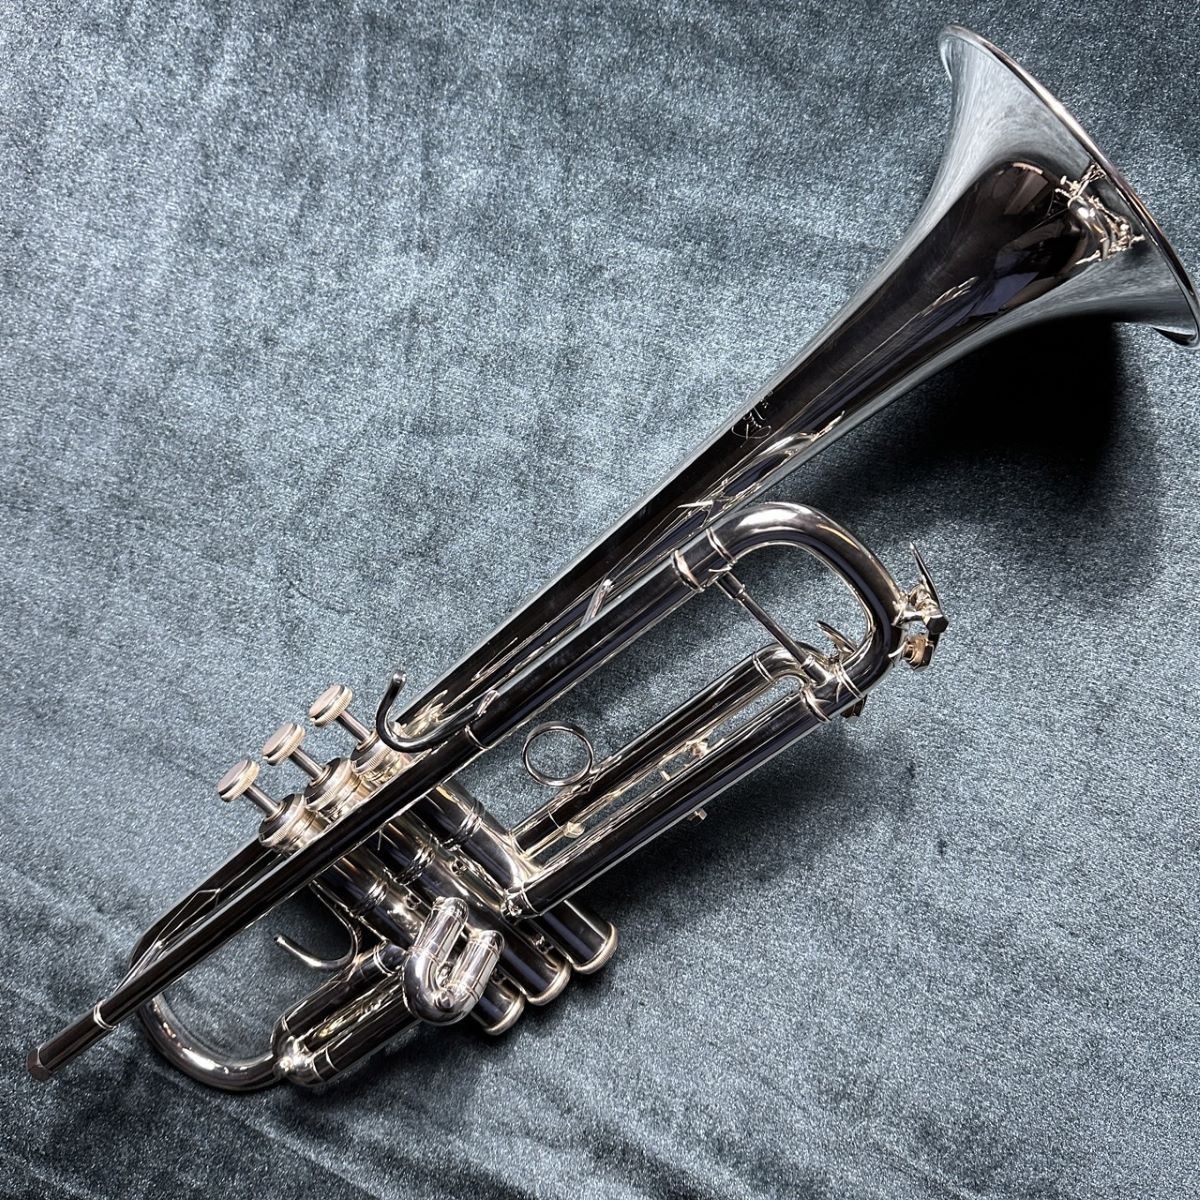 Bach Vincent37 Trumpet シルバープレート仕上げ B♭ トランペット ...